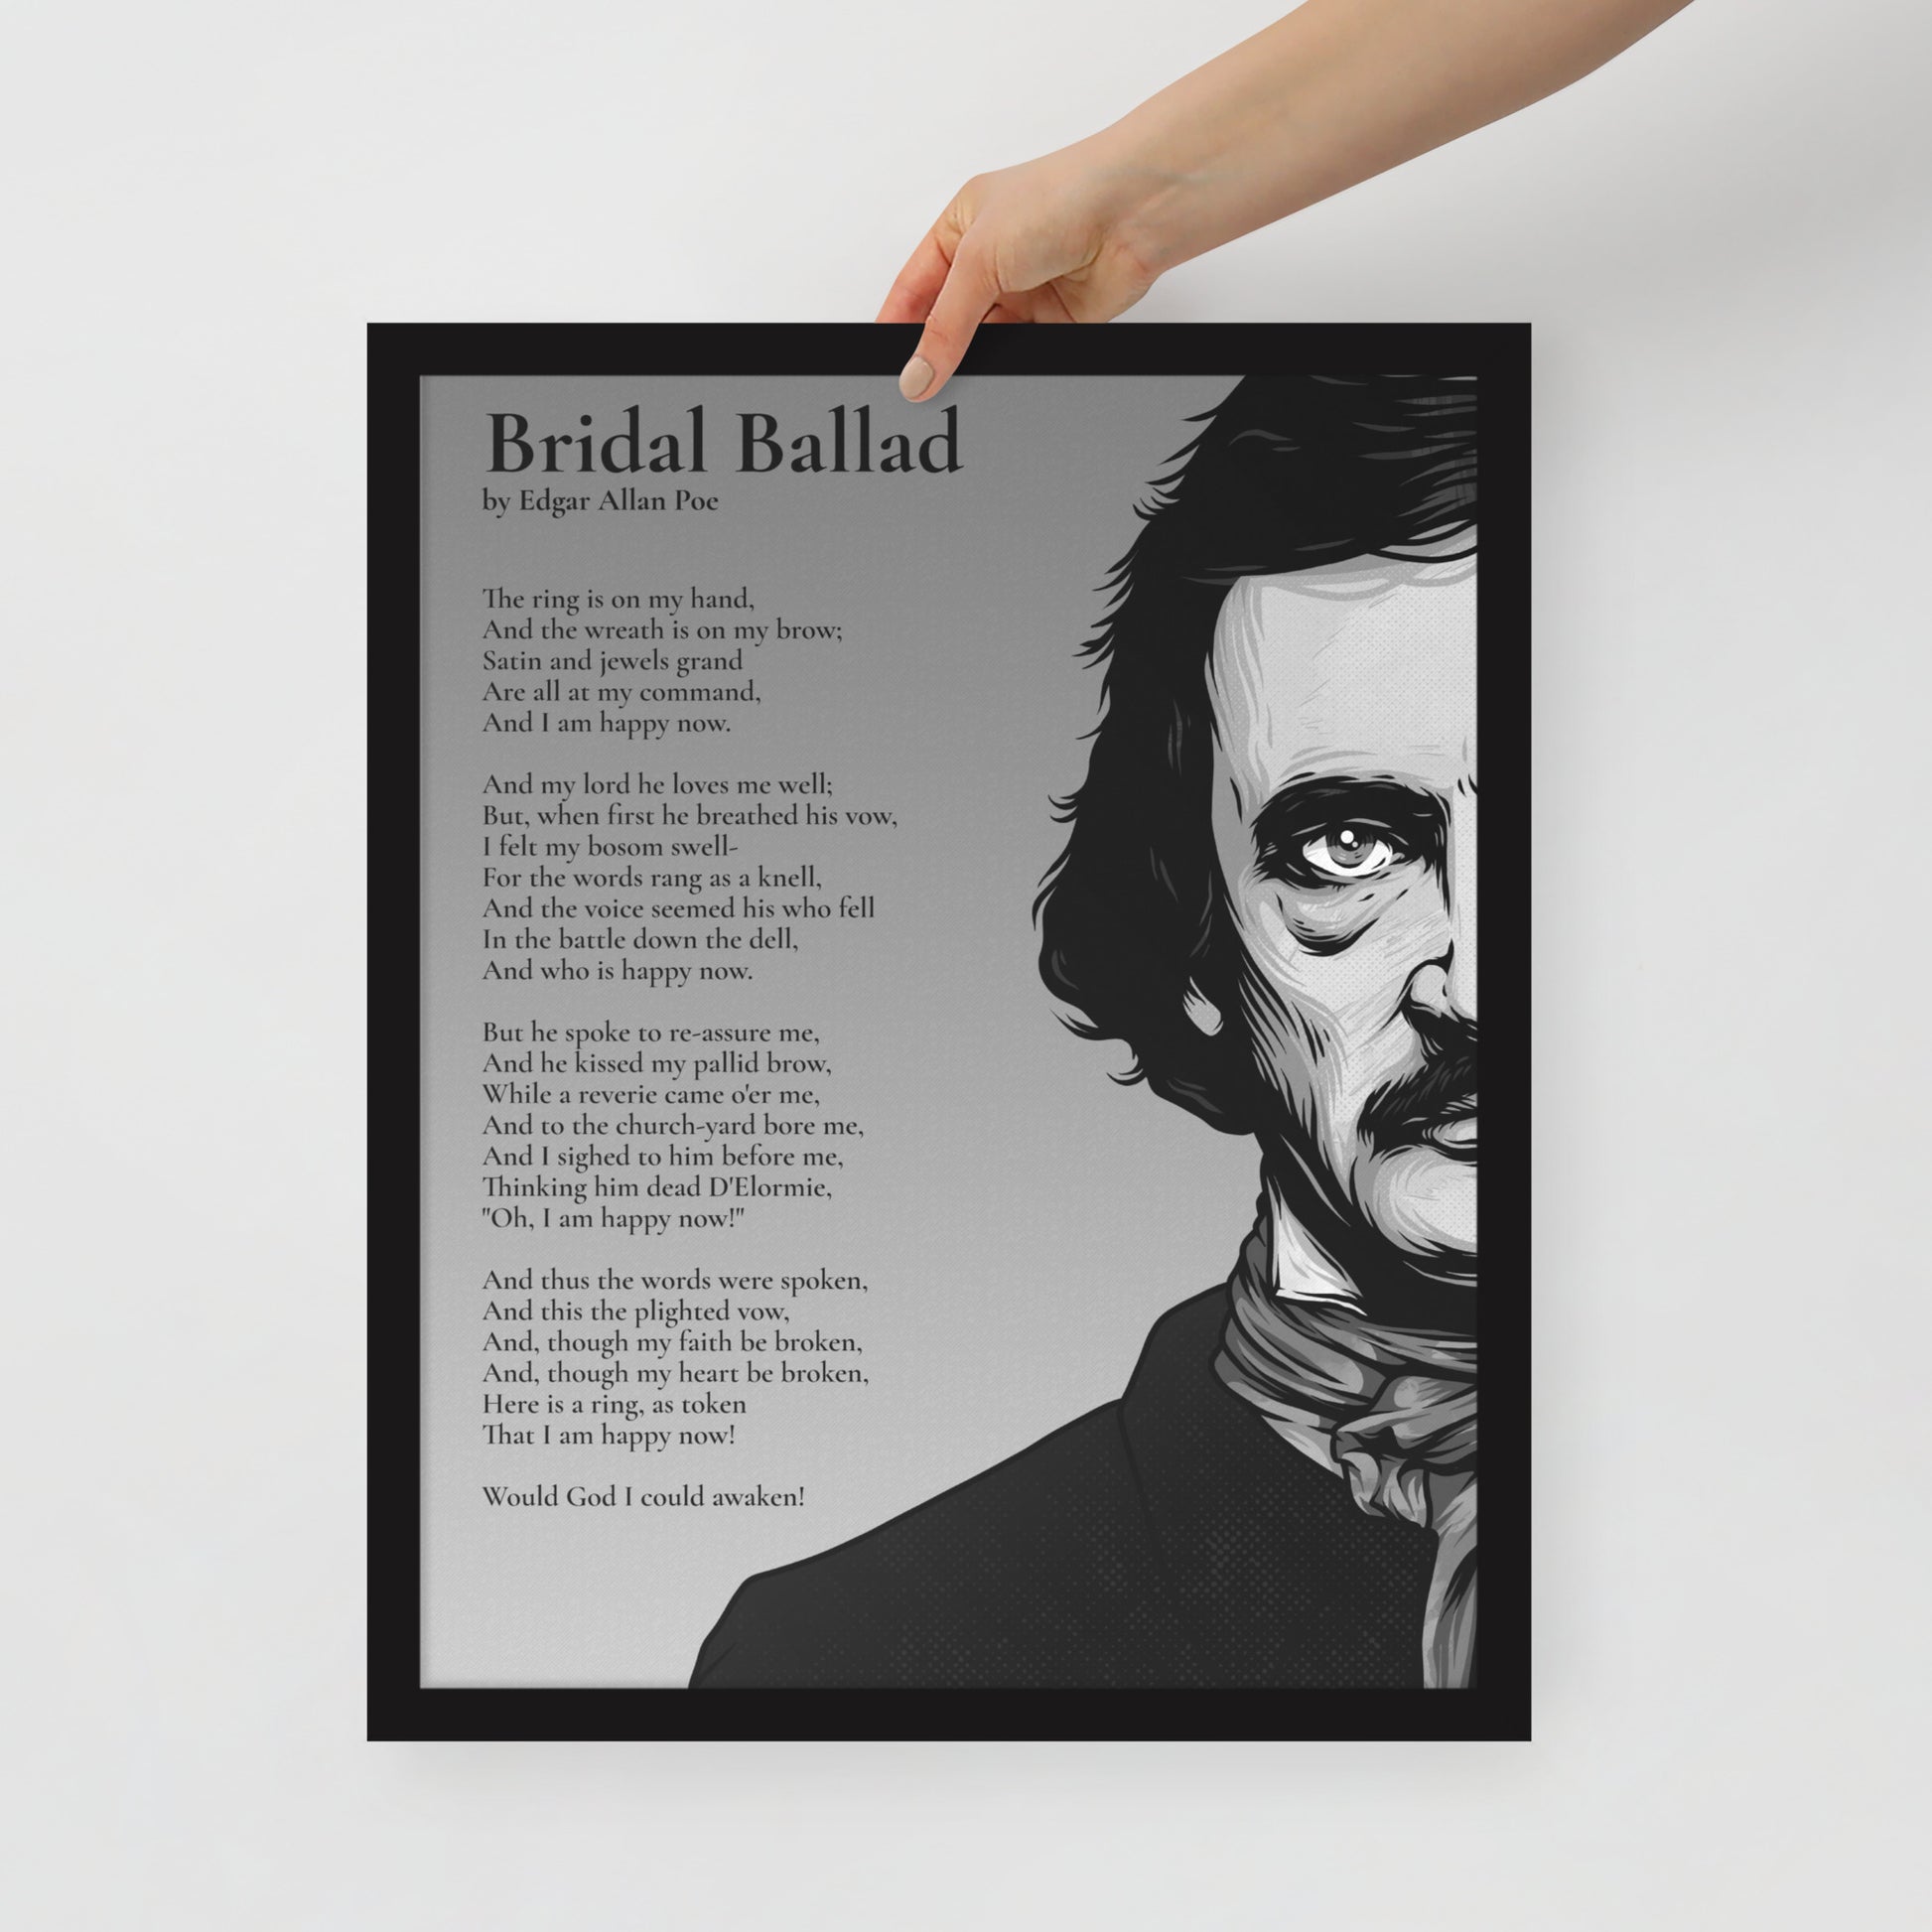 Edgar Allan Poe's 'Beloved Physician' Framed Matted Poster - 16 x 20 Black Frame